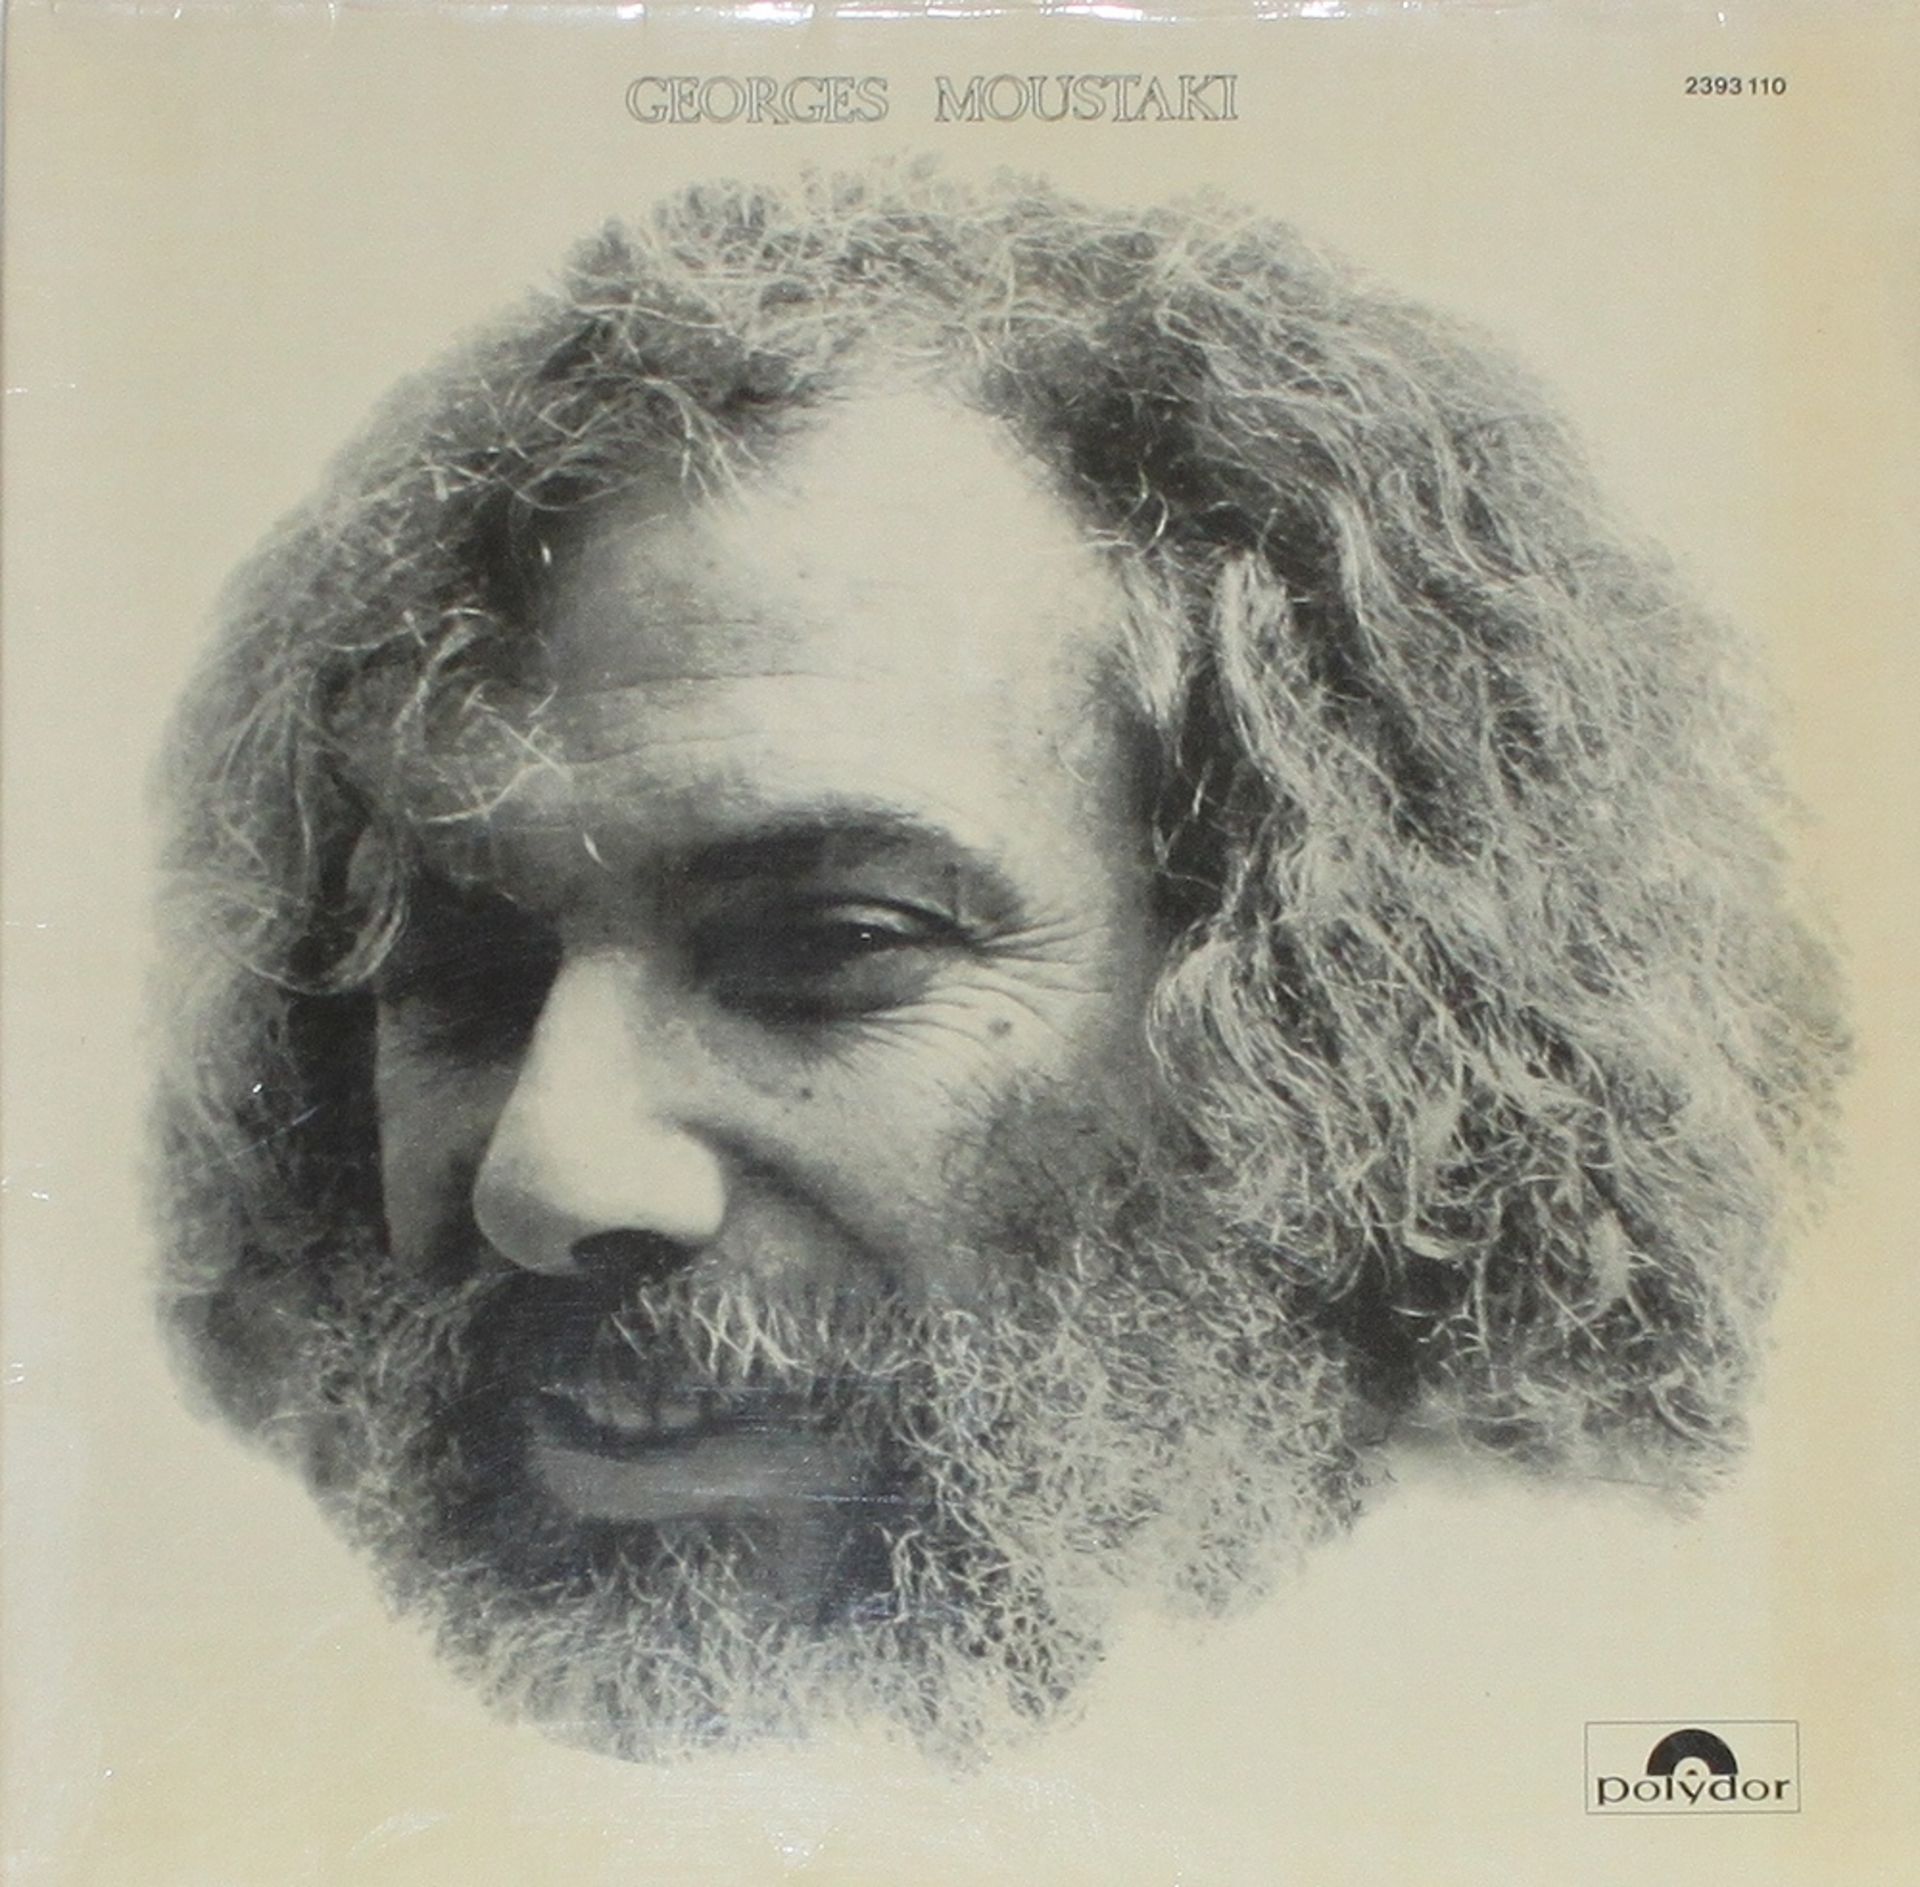 Schallplatte. Moustaki, Georges. "Georges Moustaki". LP – Schallplatte, Gatefold, Polydor 2393110.